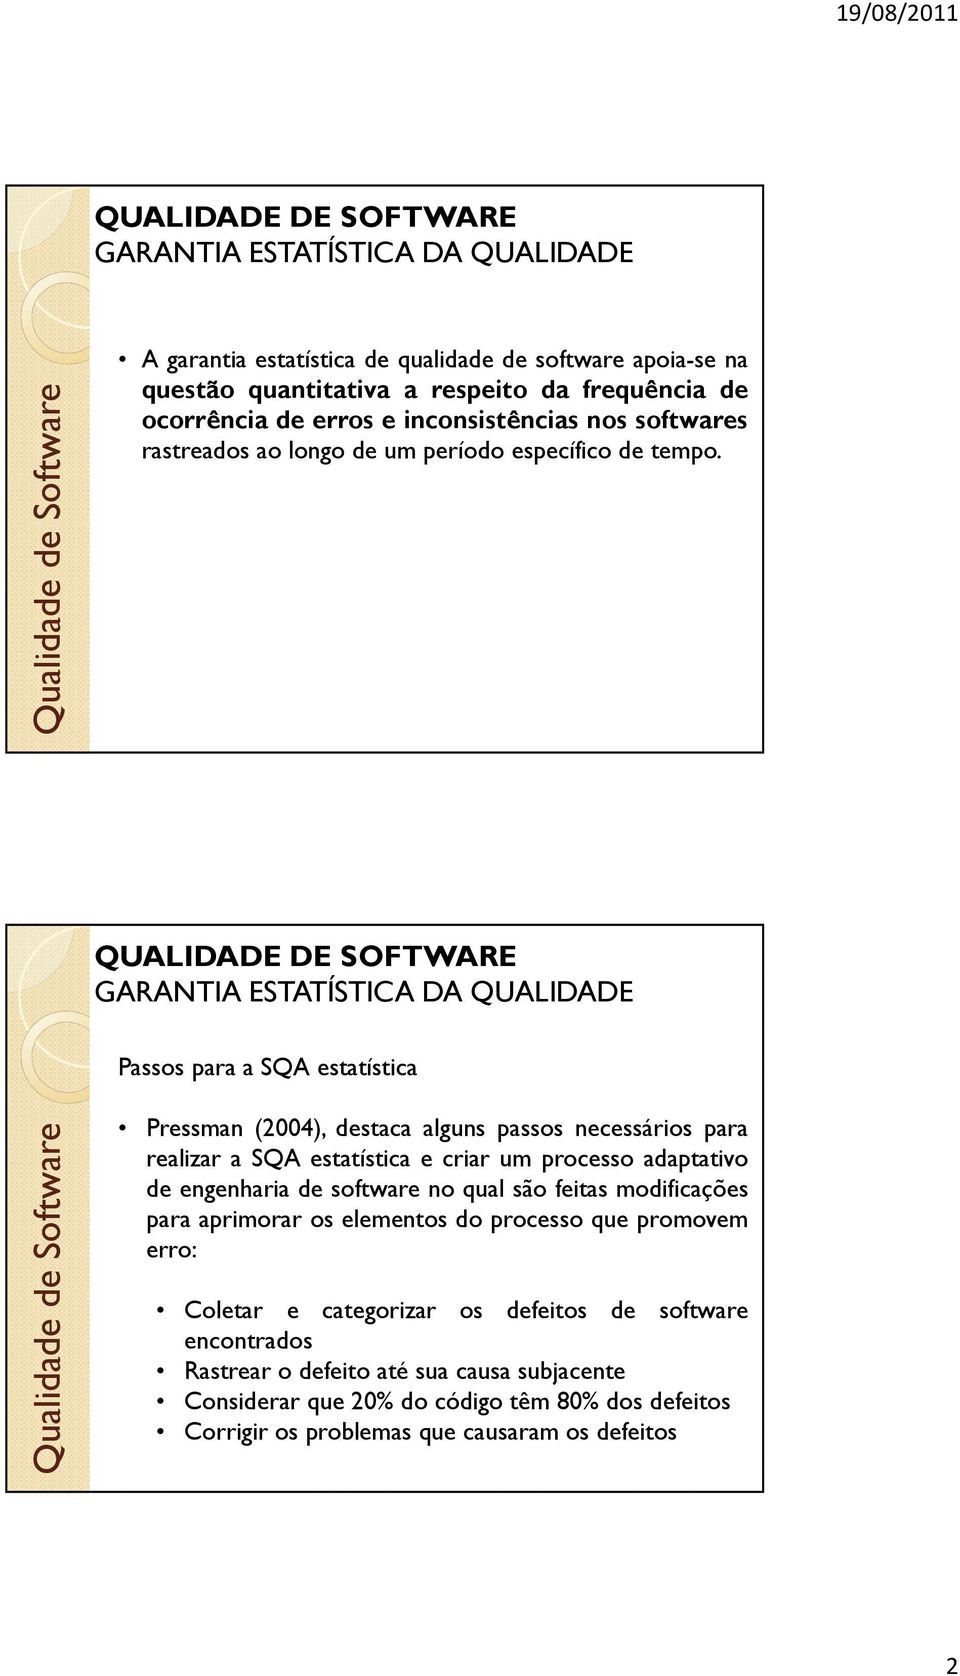 Passos para a SQA estatística Pressman (2004), destaca alguns passos necessários para realizar a SQA estatística e criar um processo adaptativo de engenharia de software